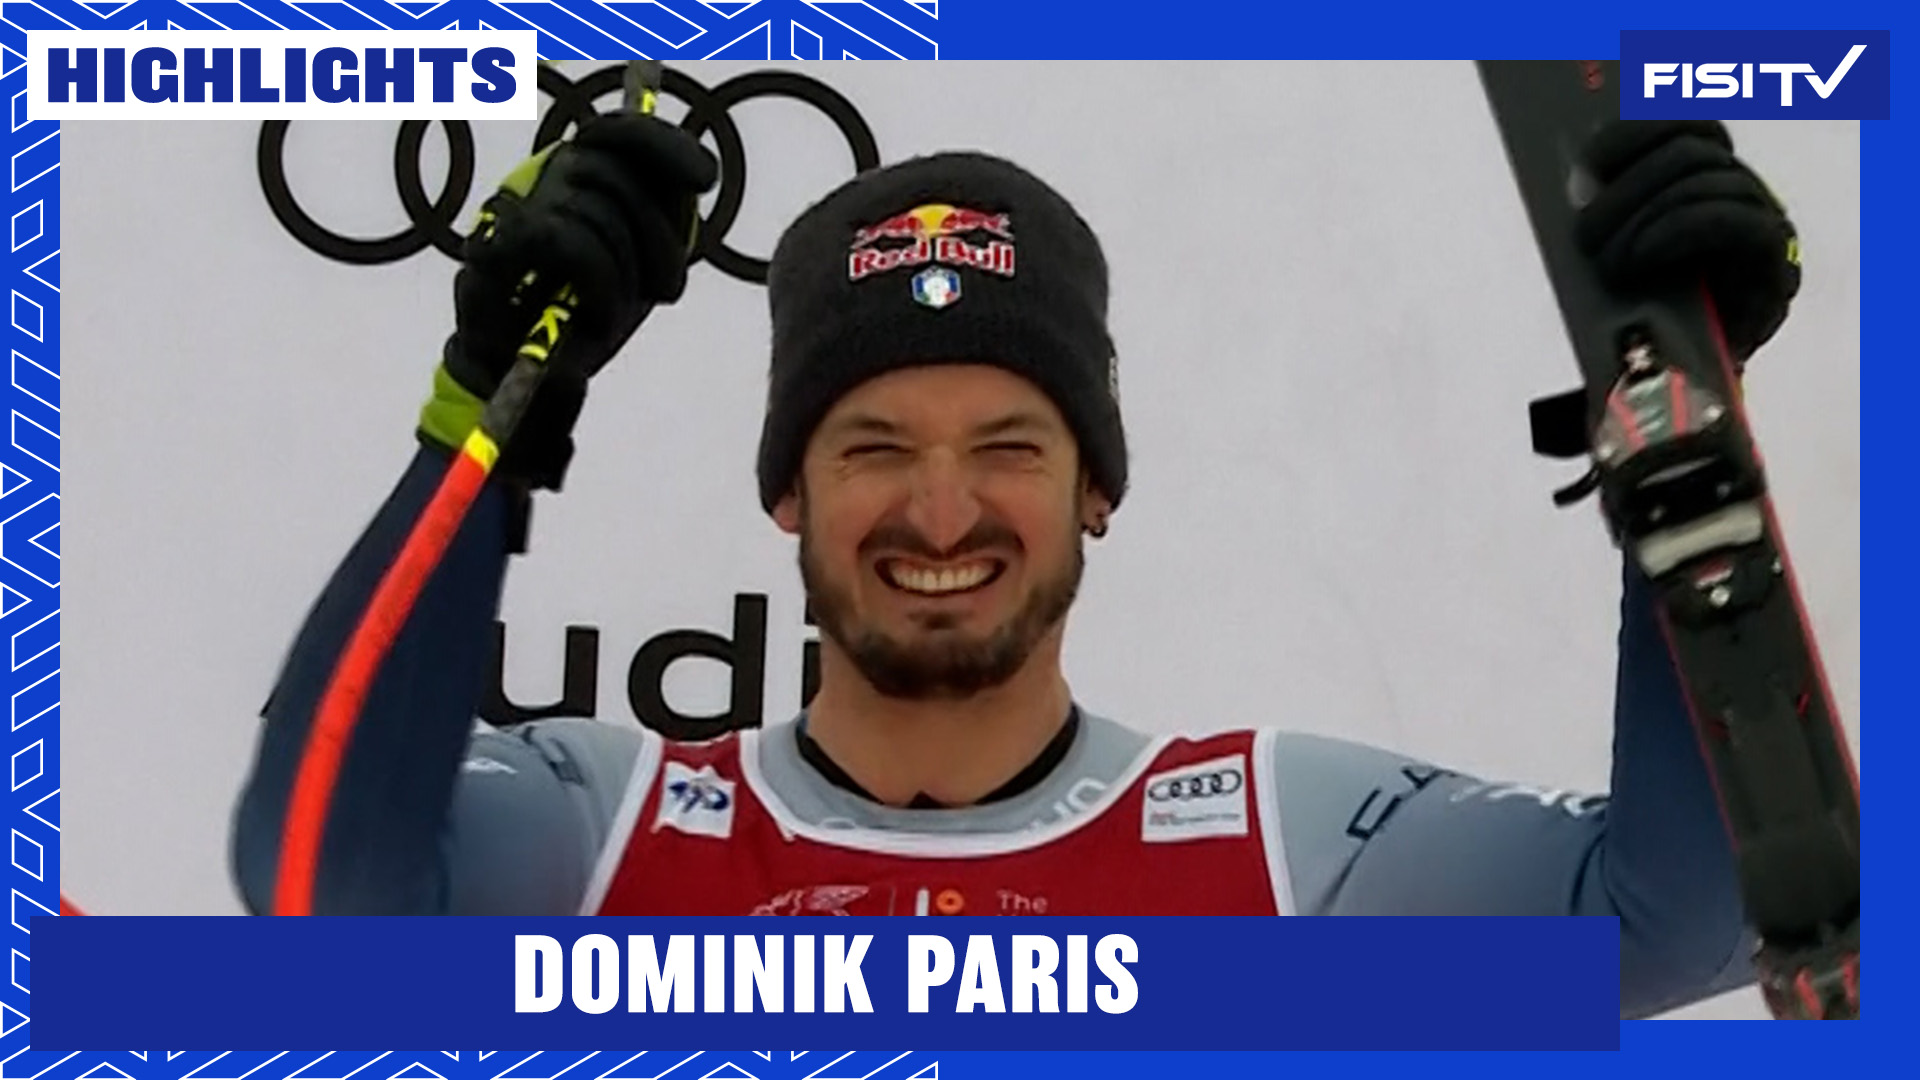 Dominik Paris torna sul podio a Kvitfjell | FISI TV